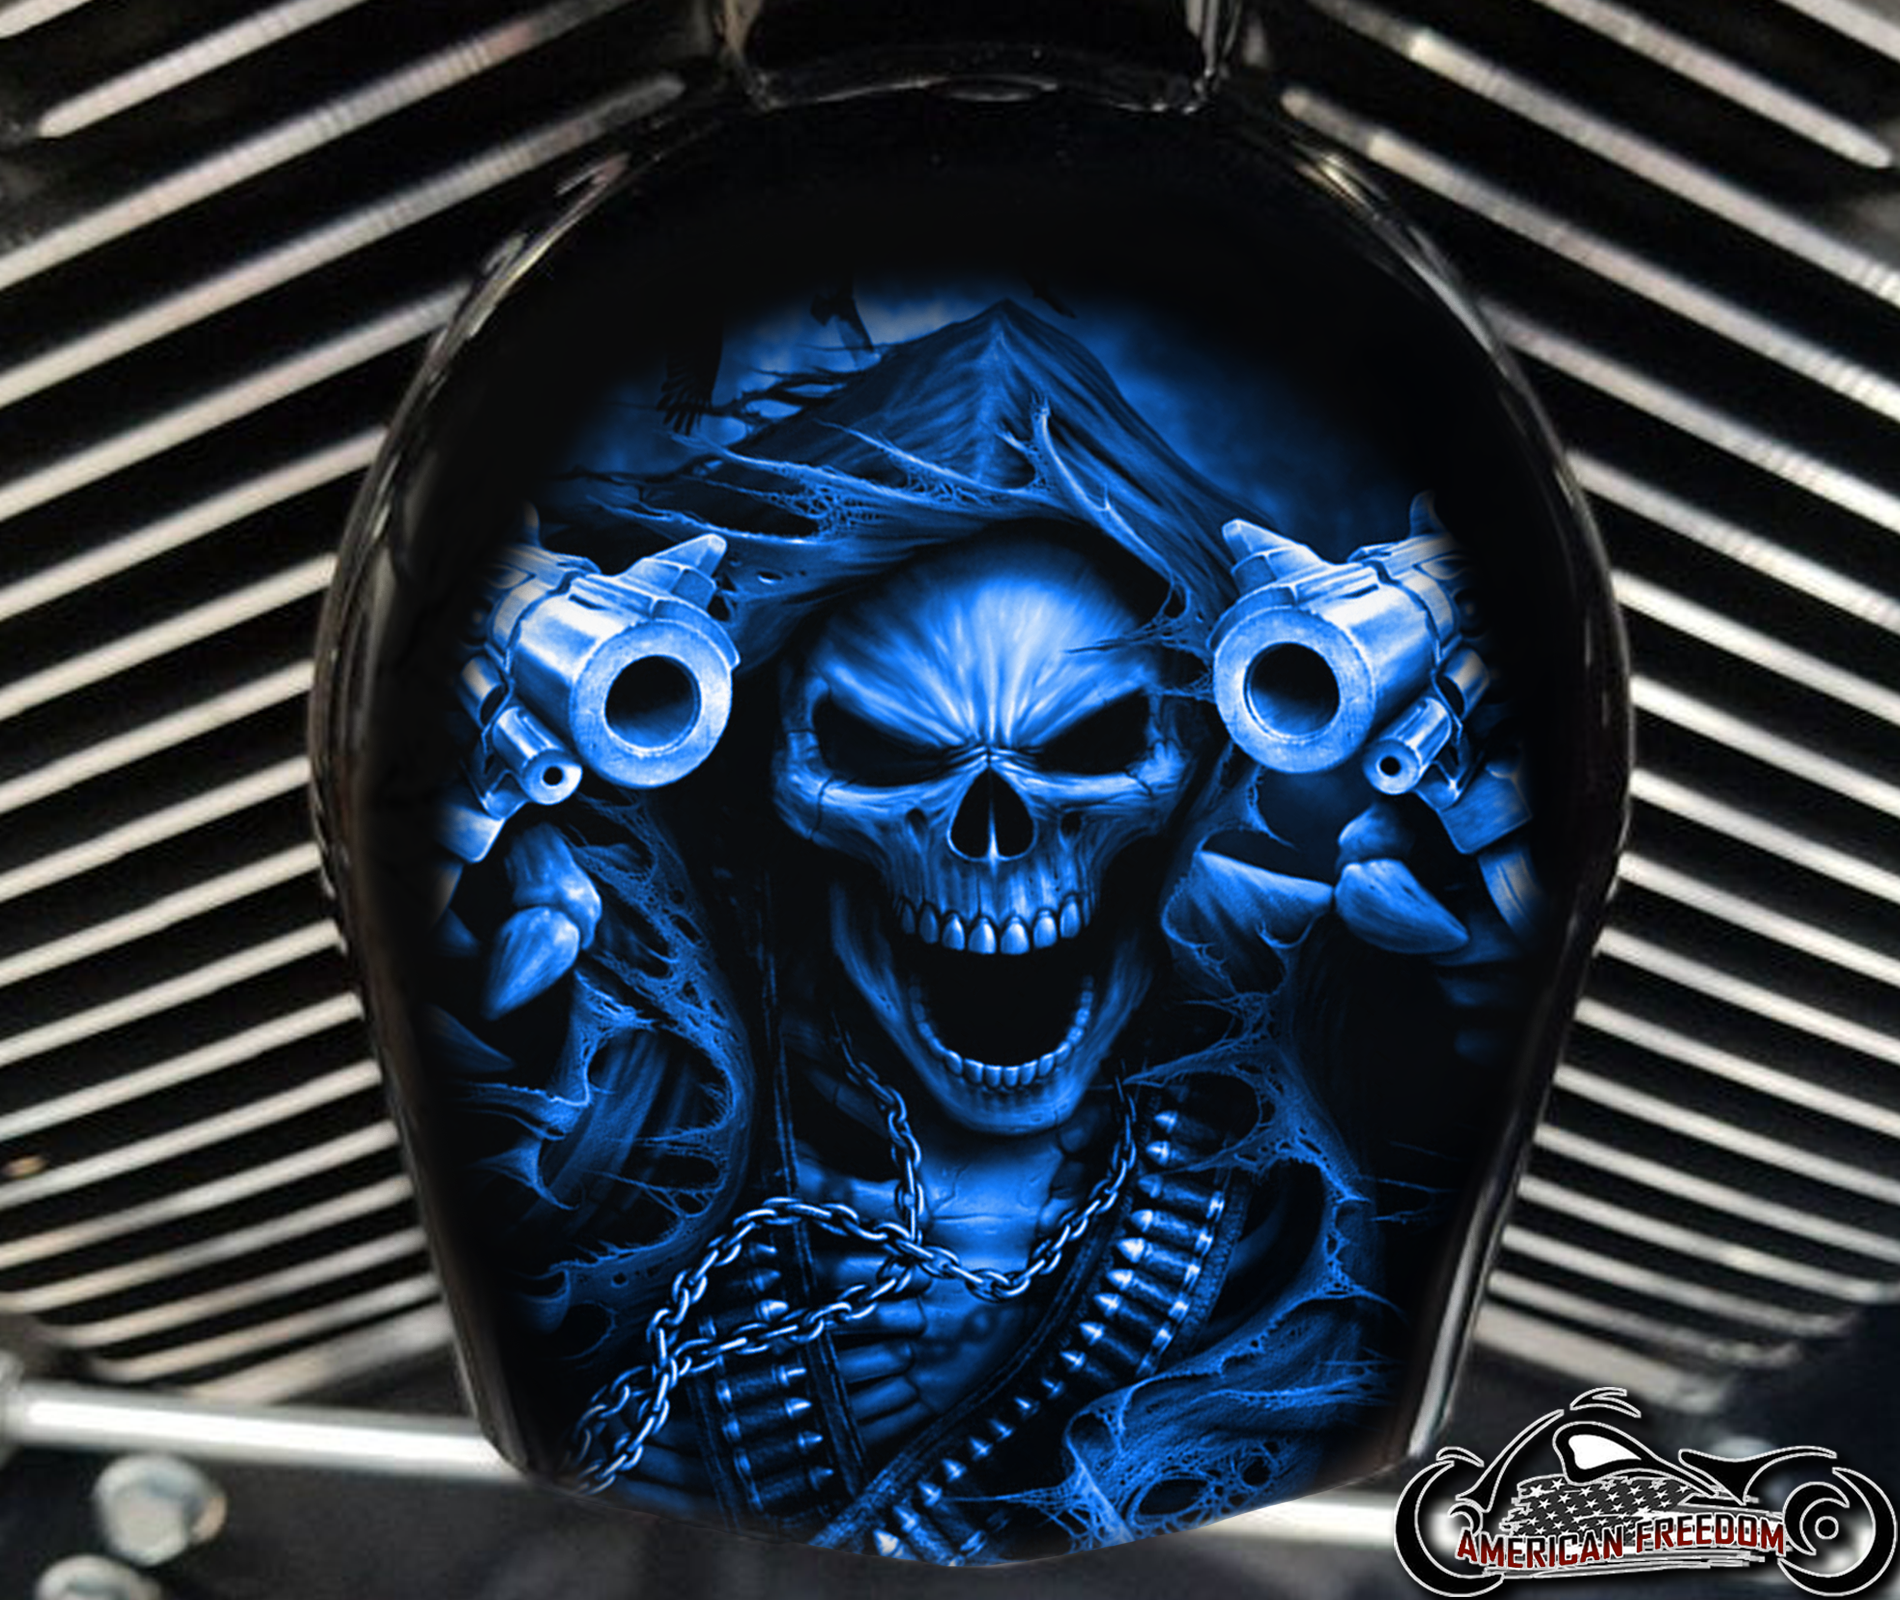 Custom Horn Cover - Gunfighter Reaper Blue